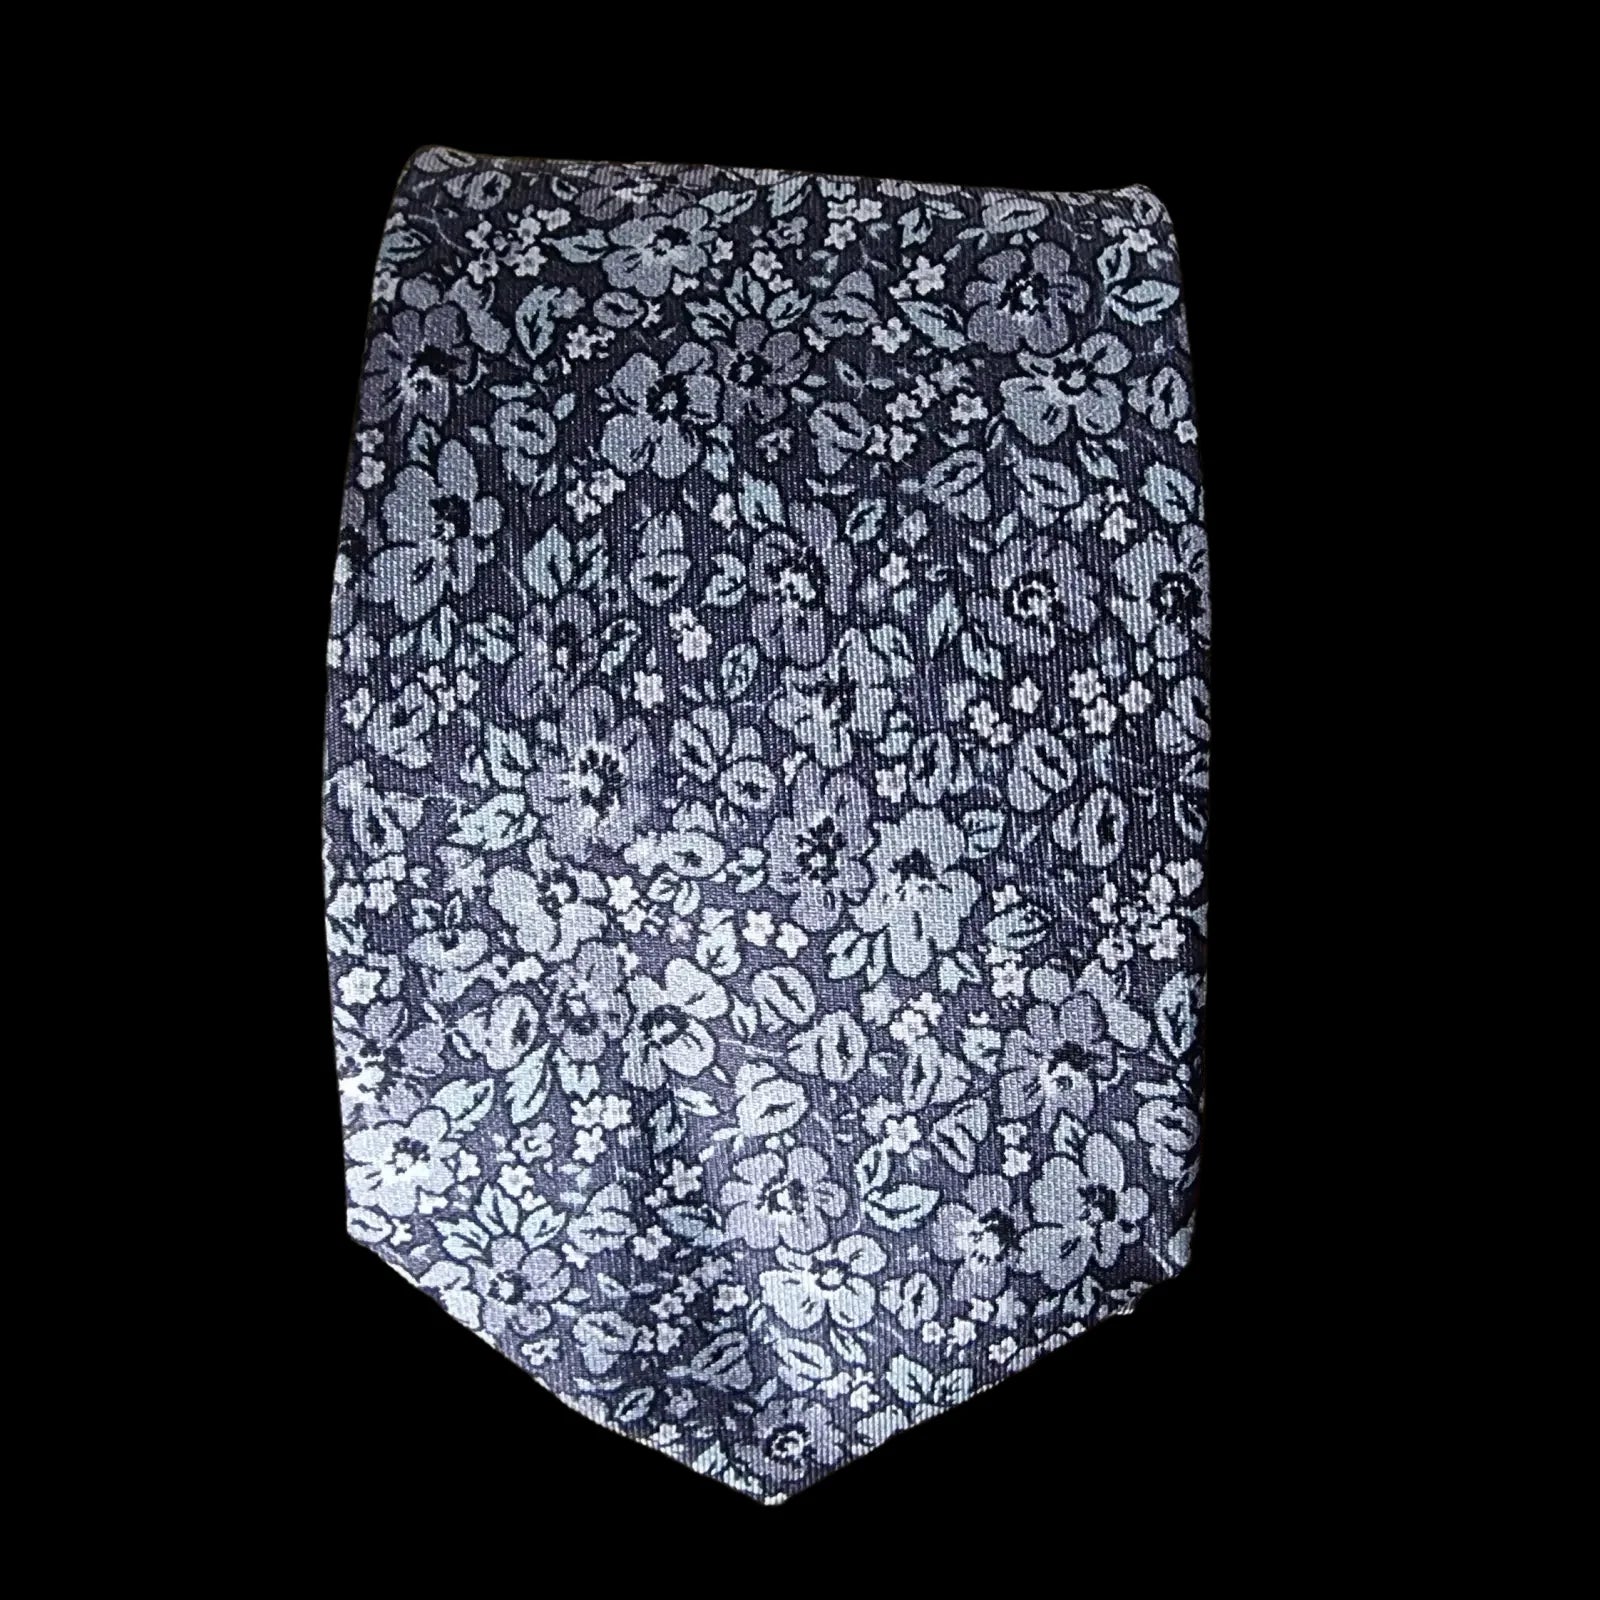 Man At La Grey Floral Silk Tie - Ties - LA - 1 - 1090